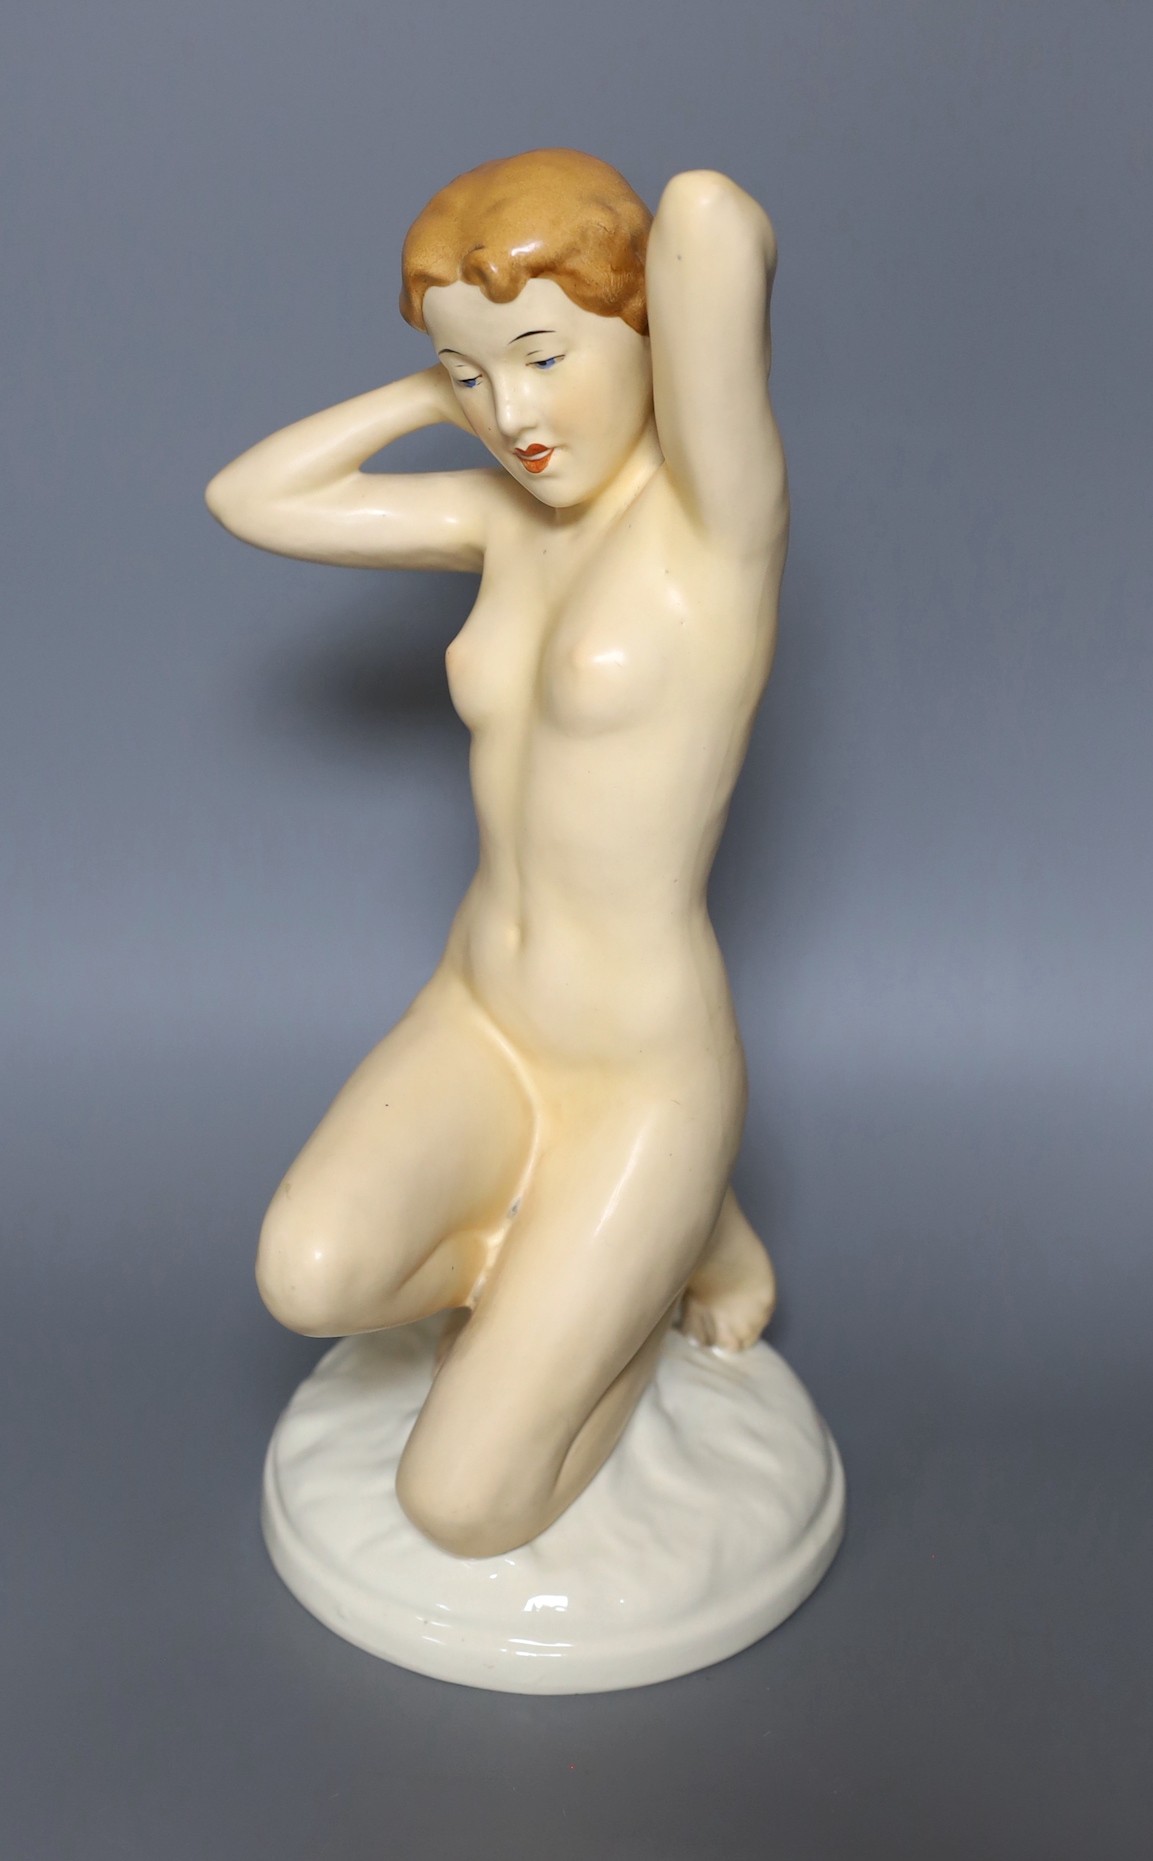 A Royal Dux porcelain figure of a nude lady, 35cm